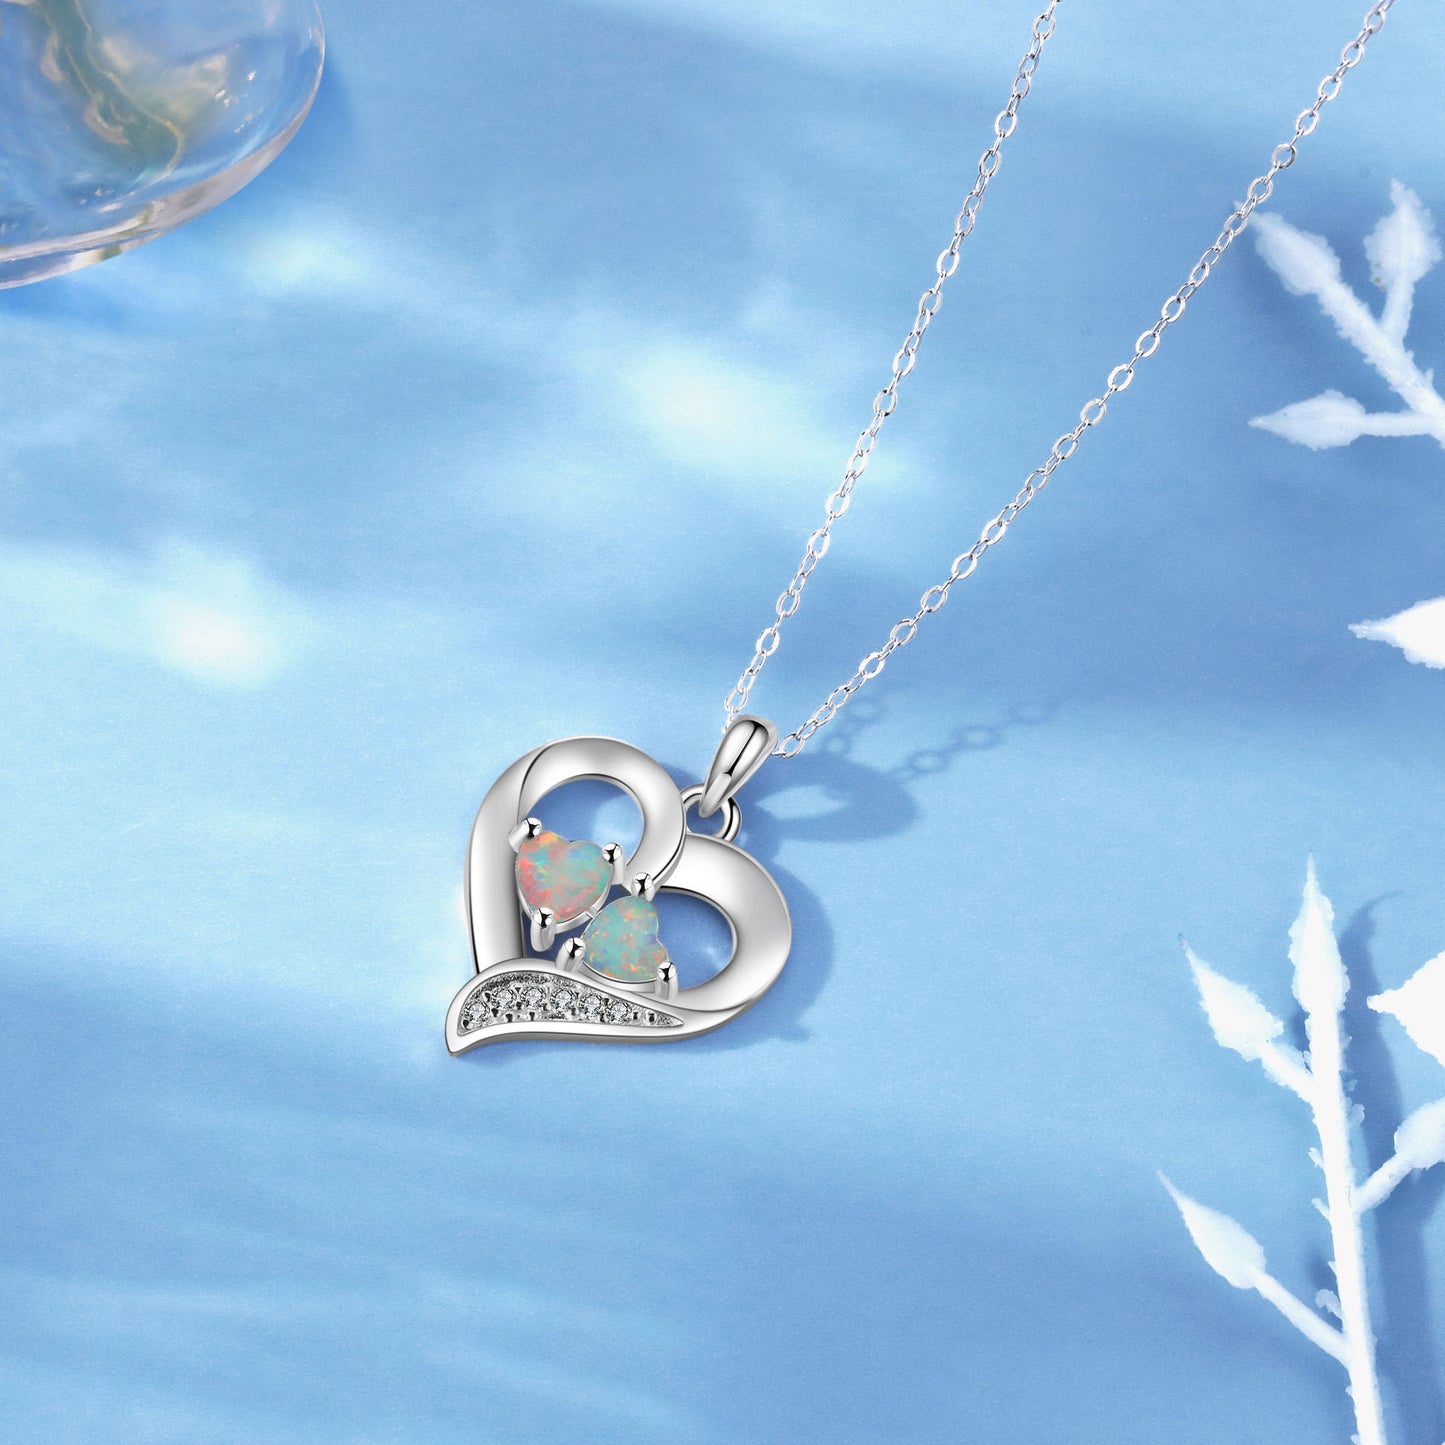 Double Heart Shape Opal Zircon Love Sterling Silver Necklace